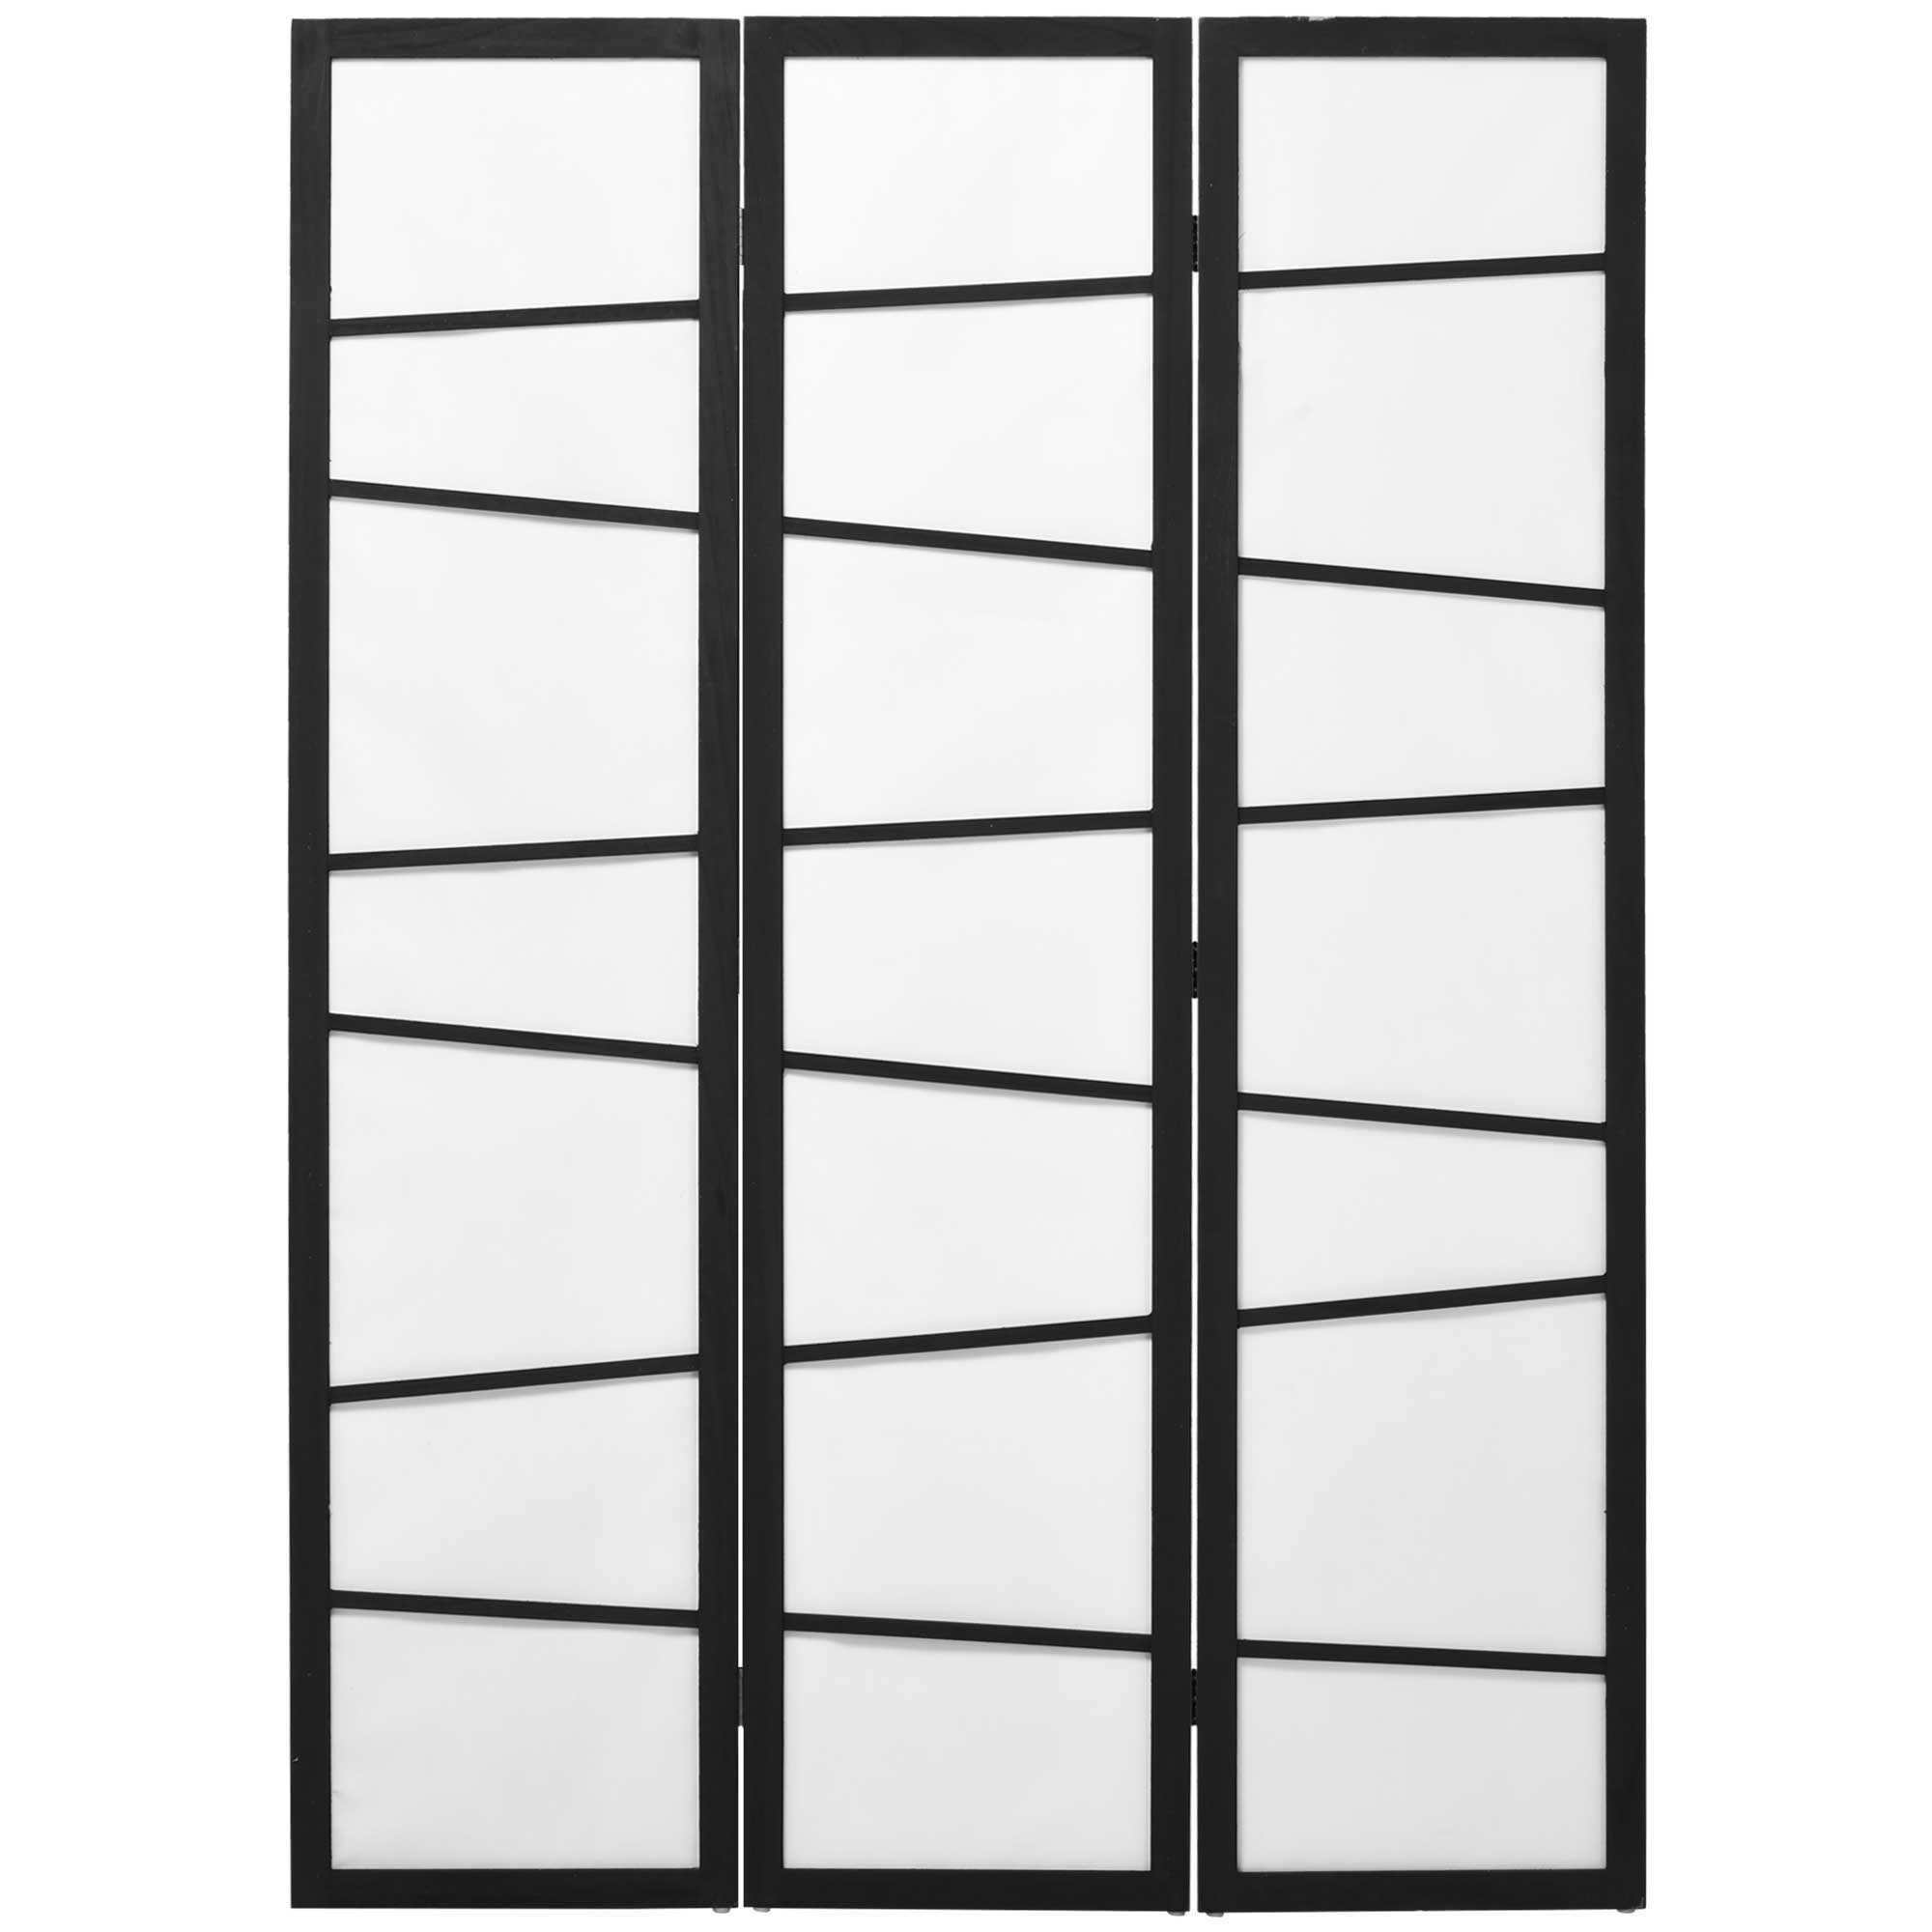 Homcom Biombo de 3 Paneles Divisor de Habitación Plegable 135x180 cm Separador de Ambientes para Oficina Salón Negro y Blanco